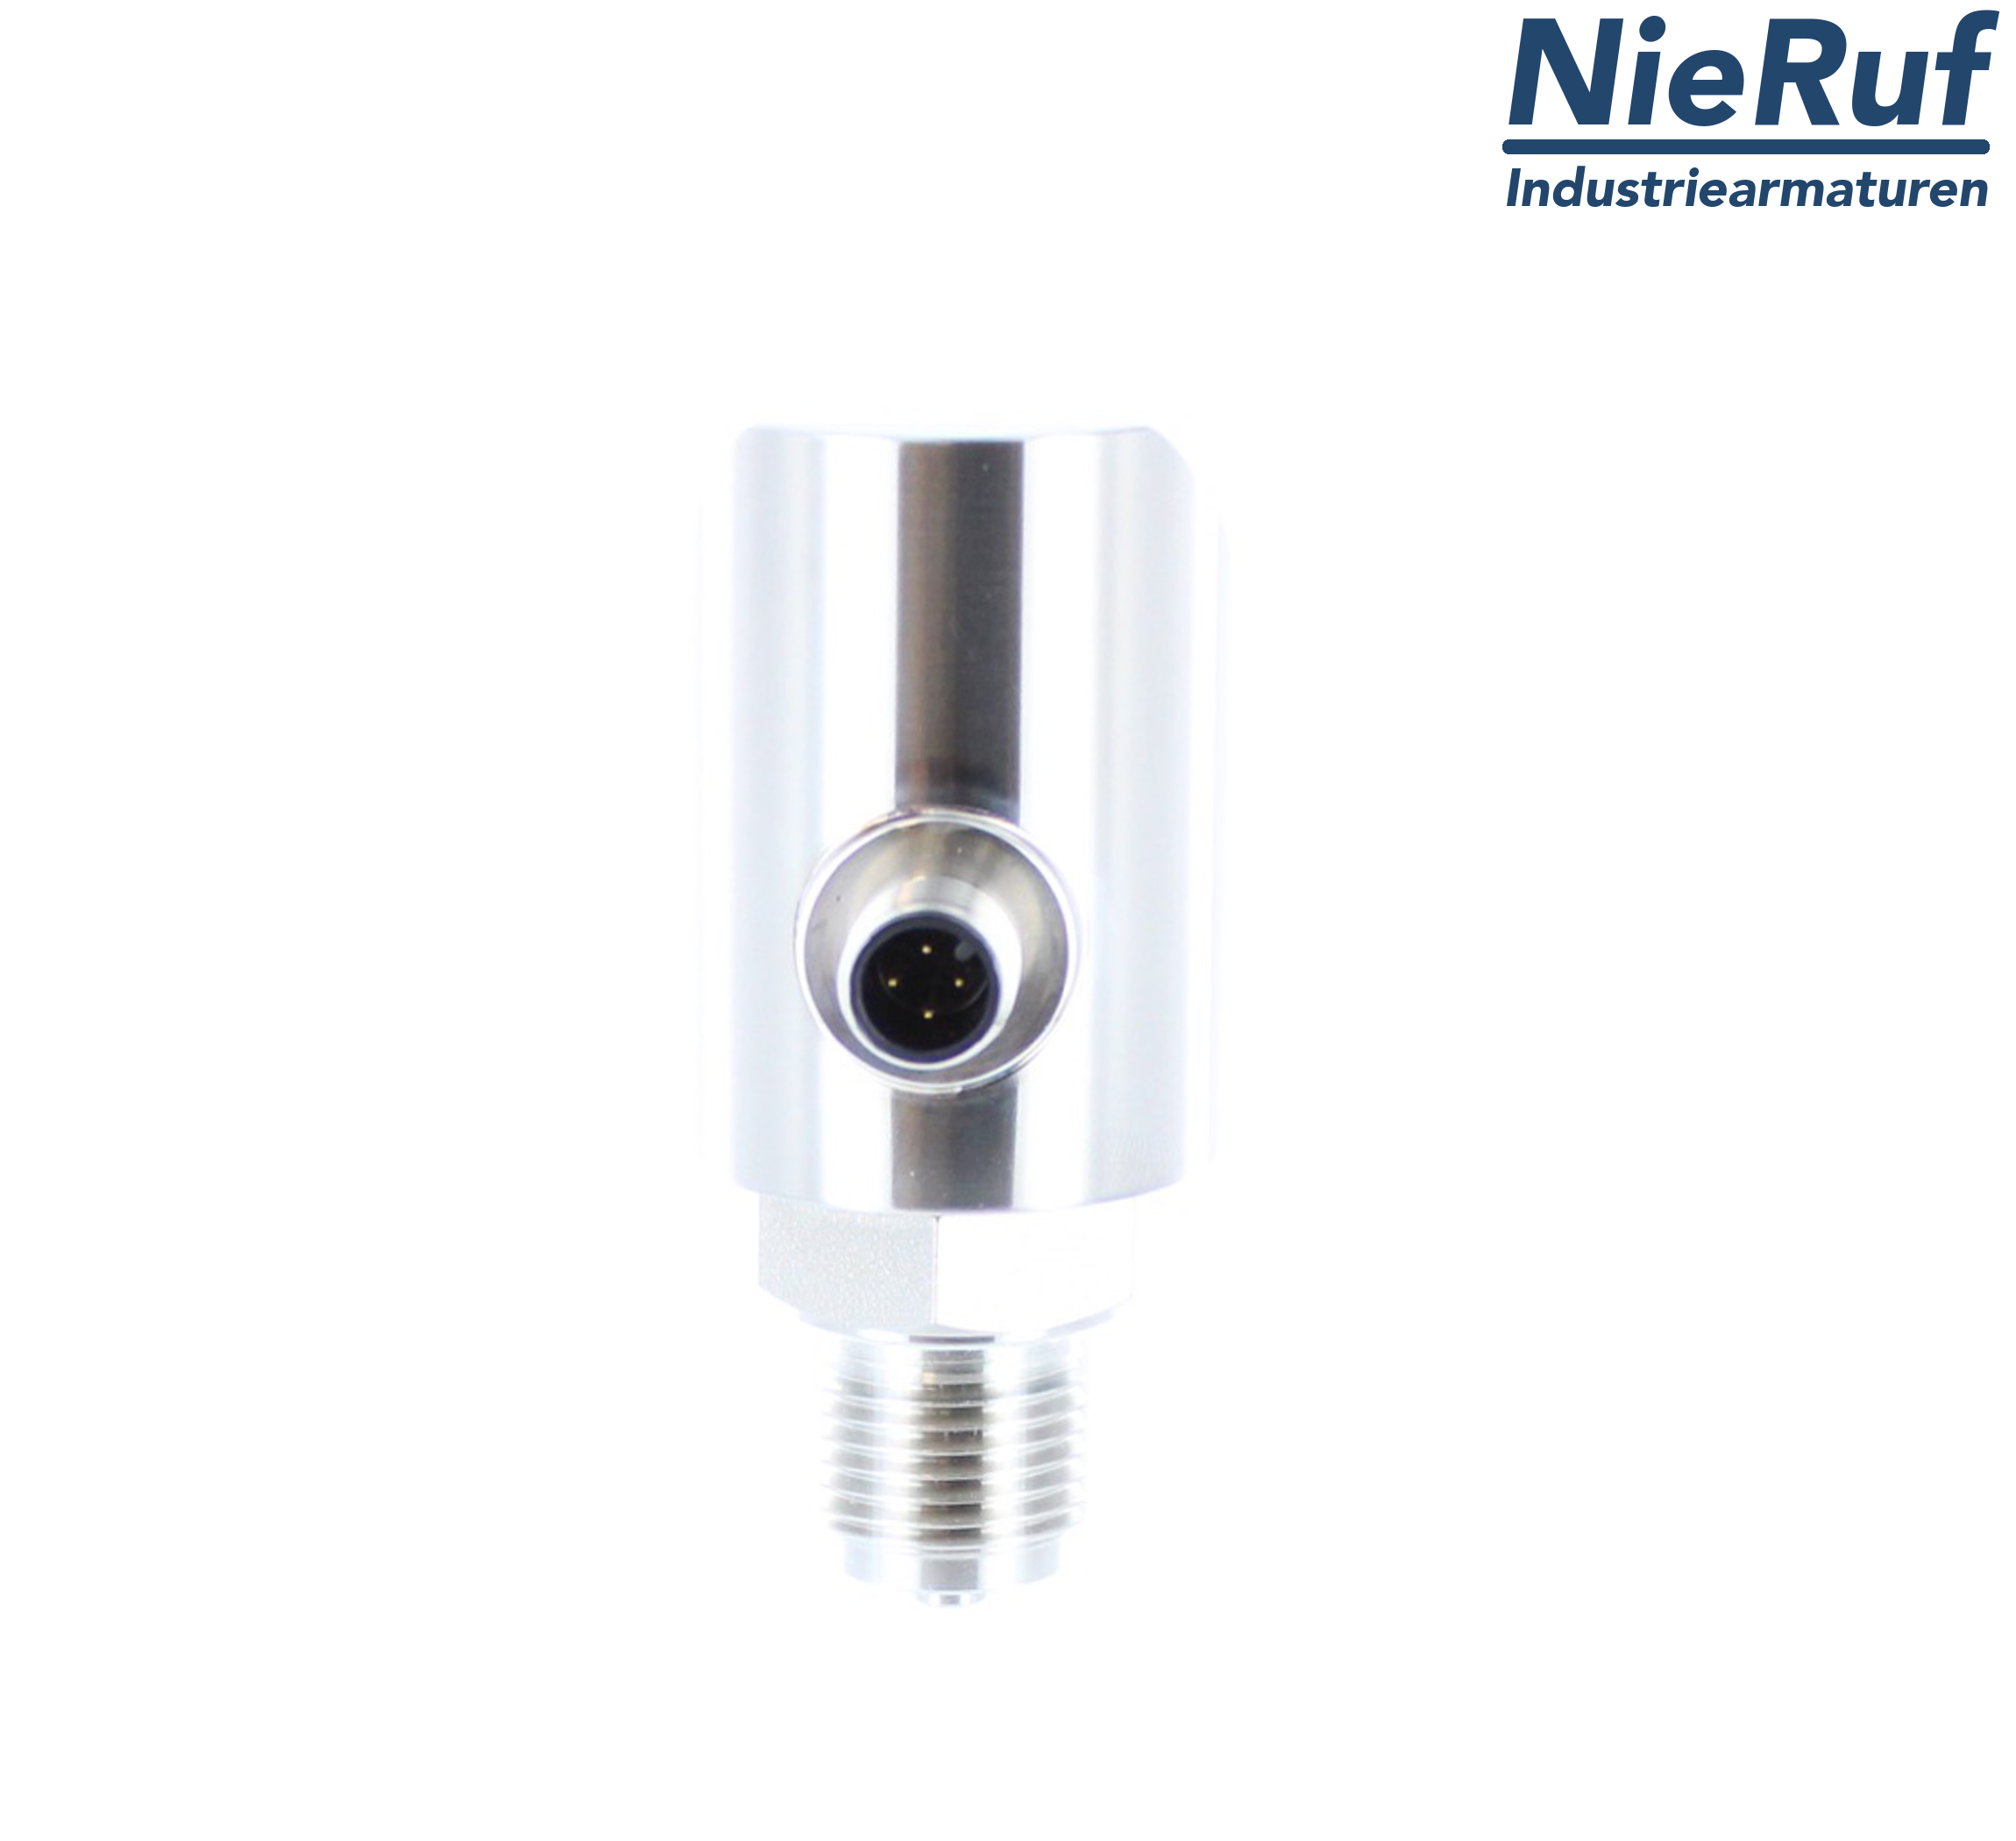 digital pressure sensor G 1/2" B 4-wire: 1xPNP, 1x4 - 20mA, Desina FPM 0,0 - 100,0 bar